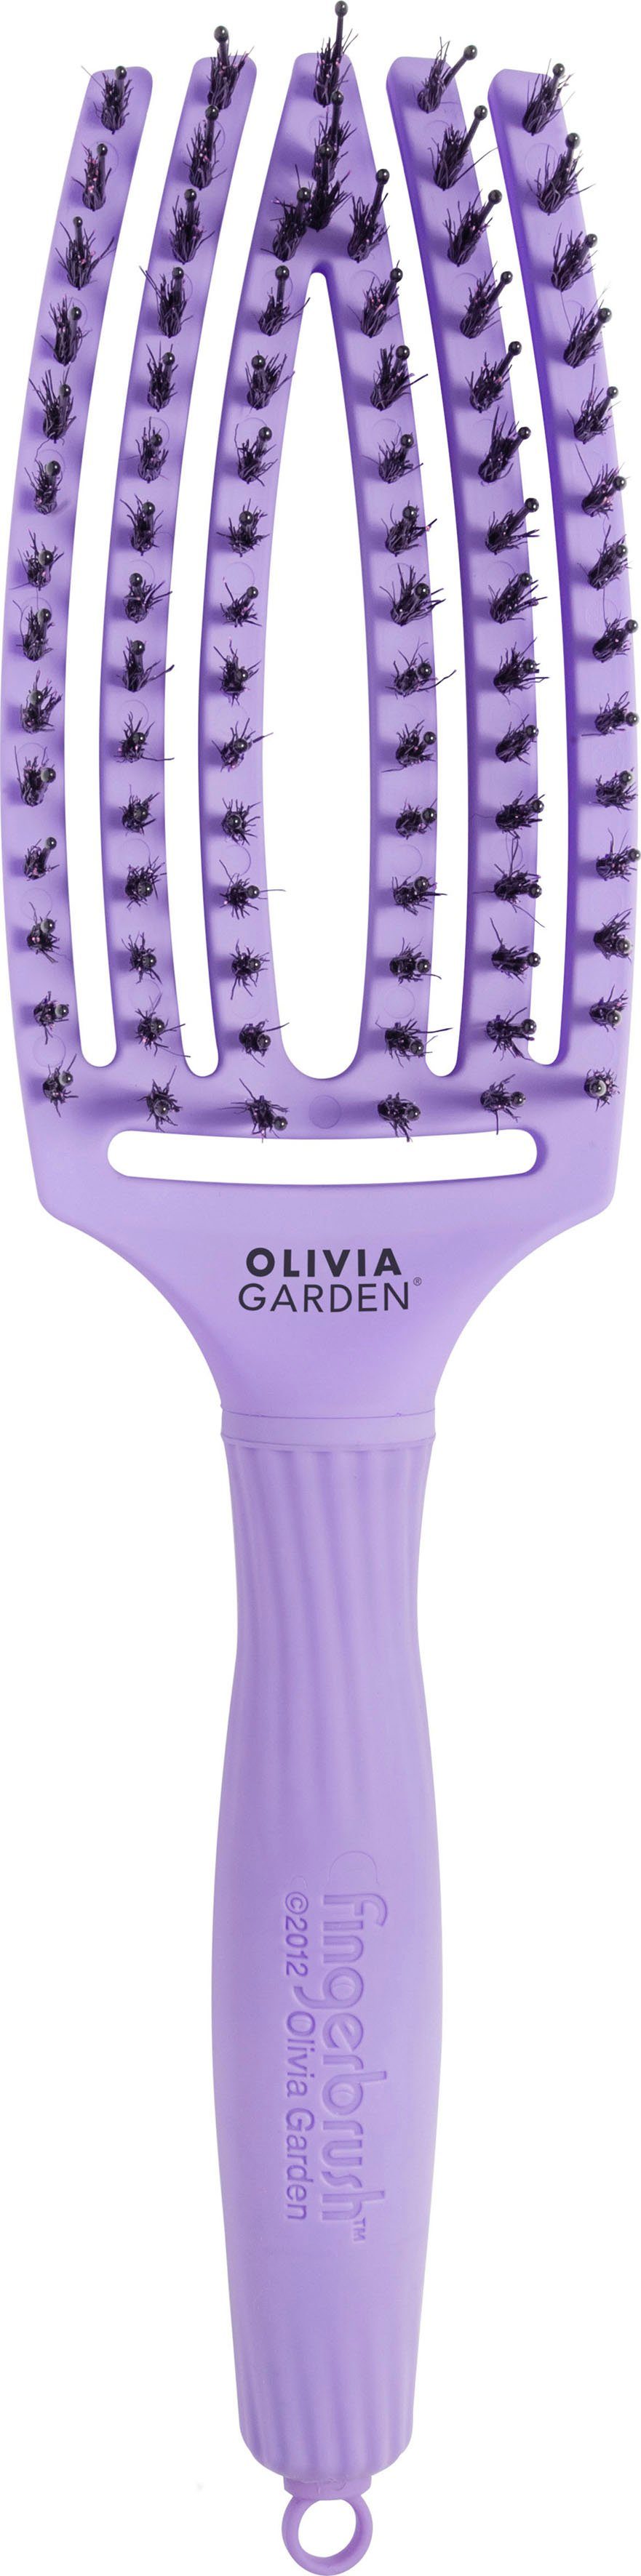 OLIVIA GARDEN Haarbürste Fingerbrush Combo zum Entwirren Kopfhautmassage und zur Glätten, Medium, Ideal